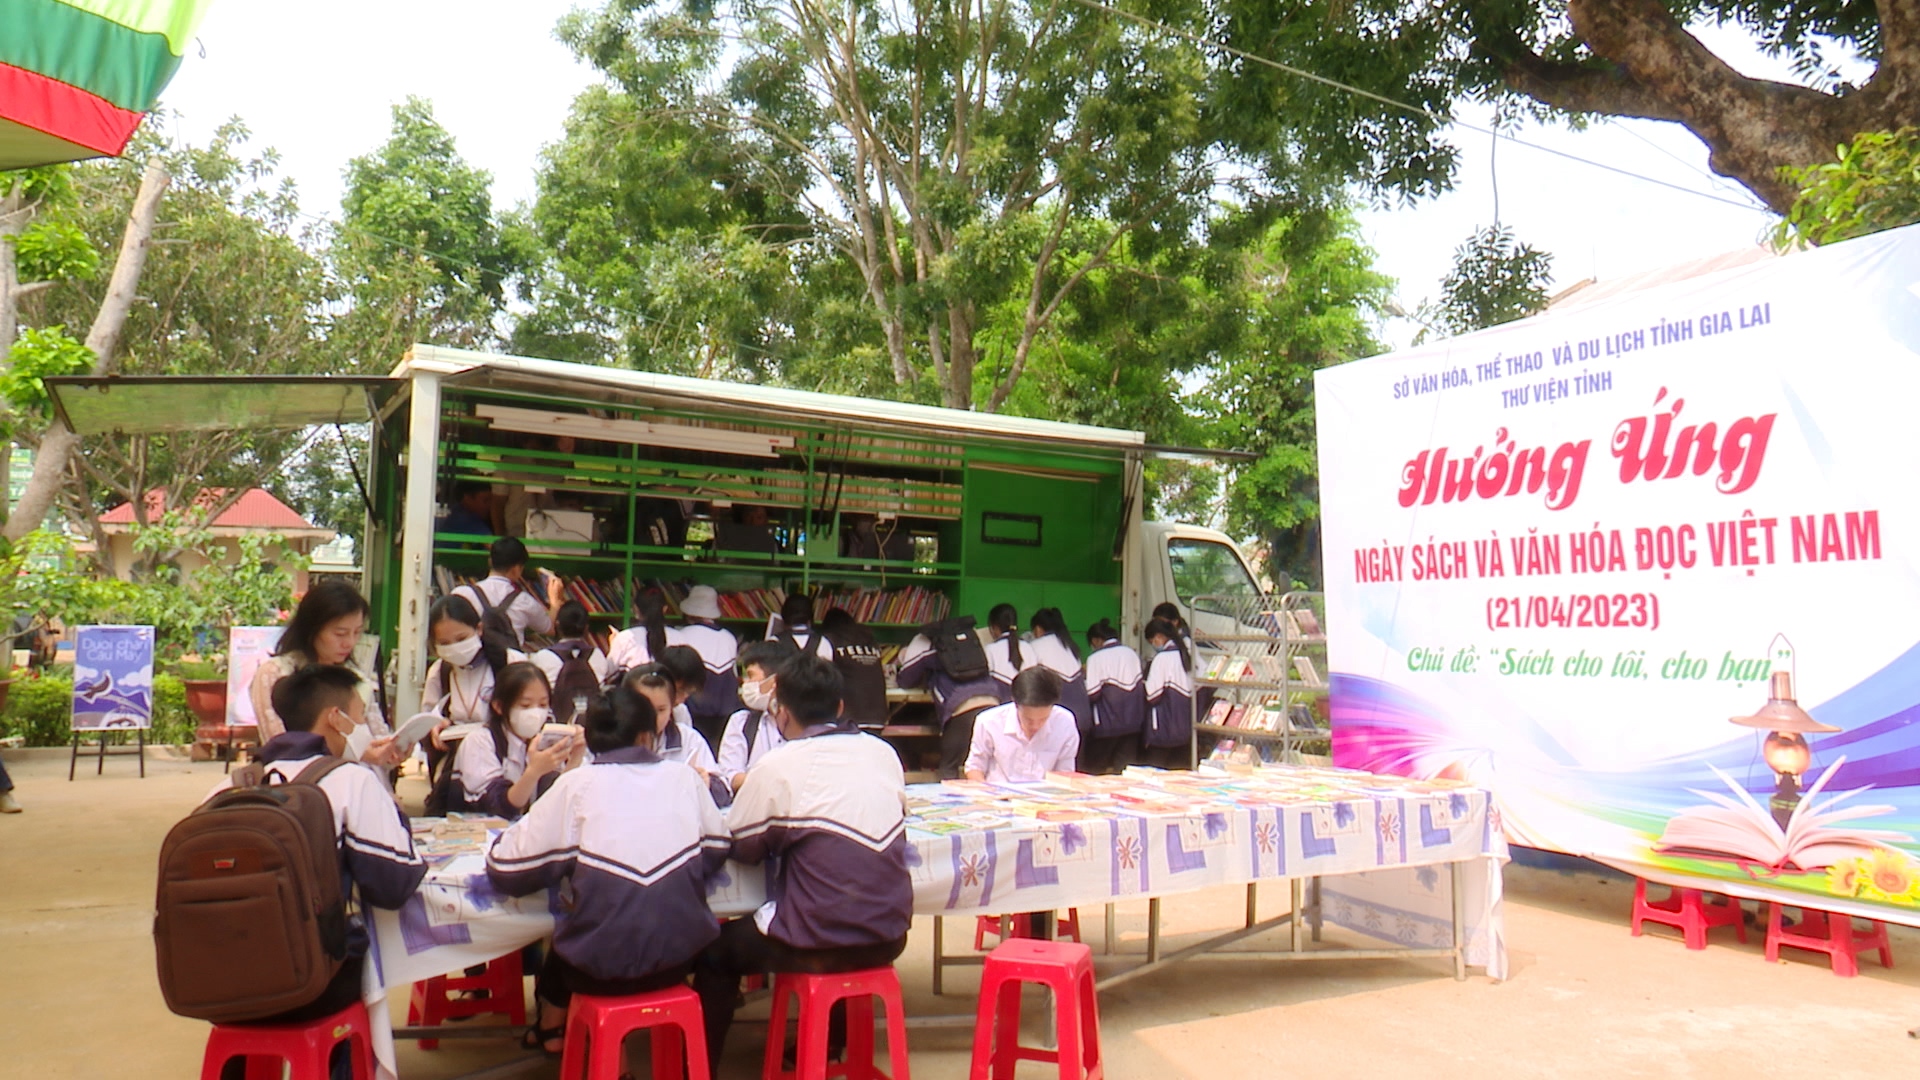 Article Lễ phát động điểm “Ngày sách và văn hóa đọc Việt Nam trên địa bàn tỉnh Gia Lai”